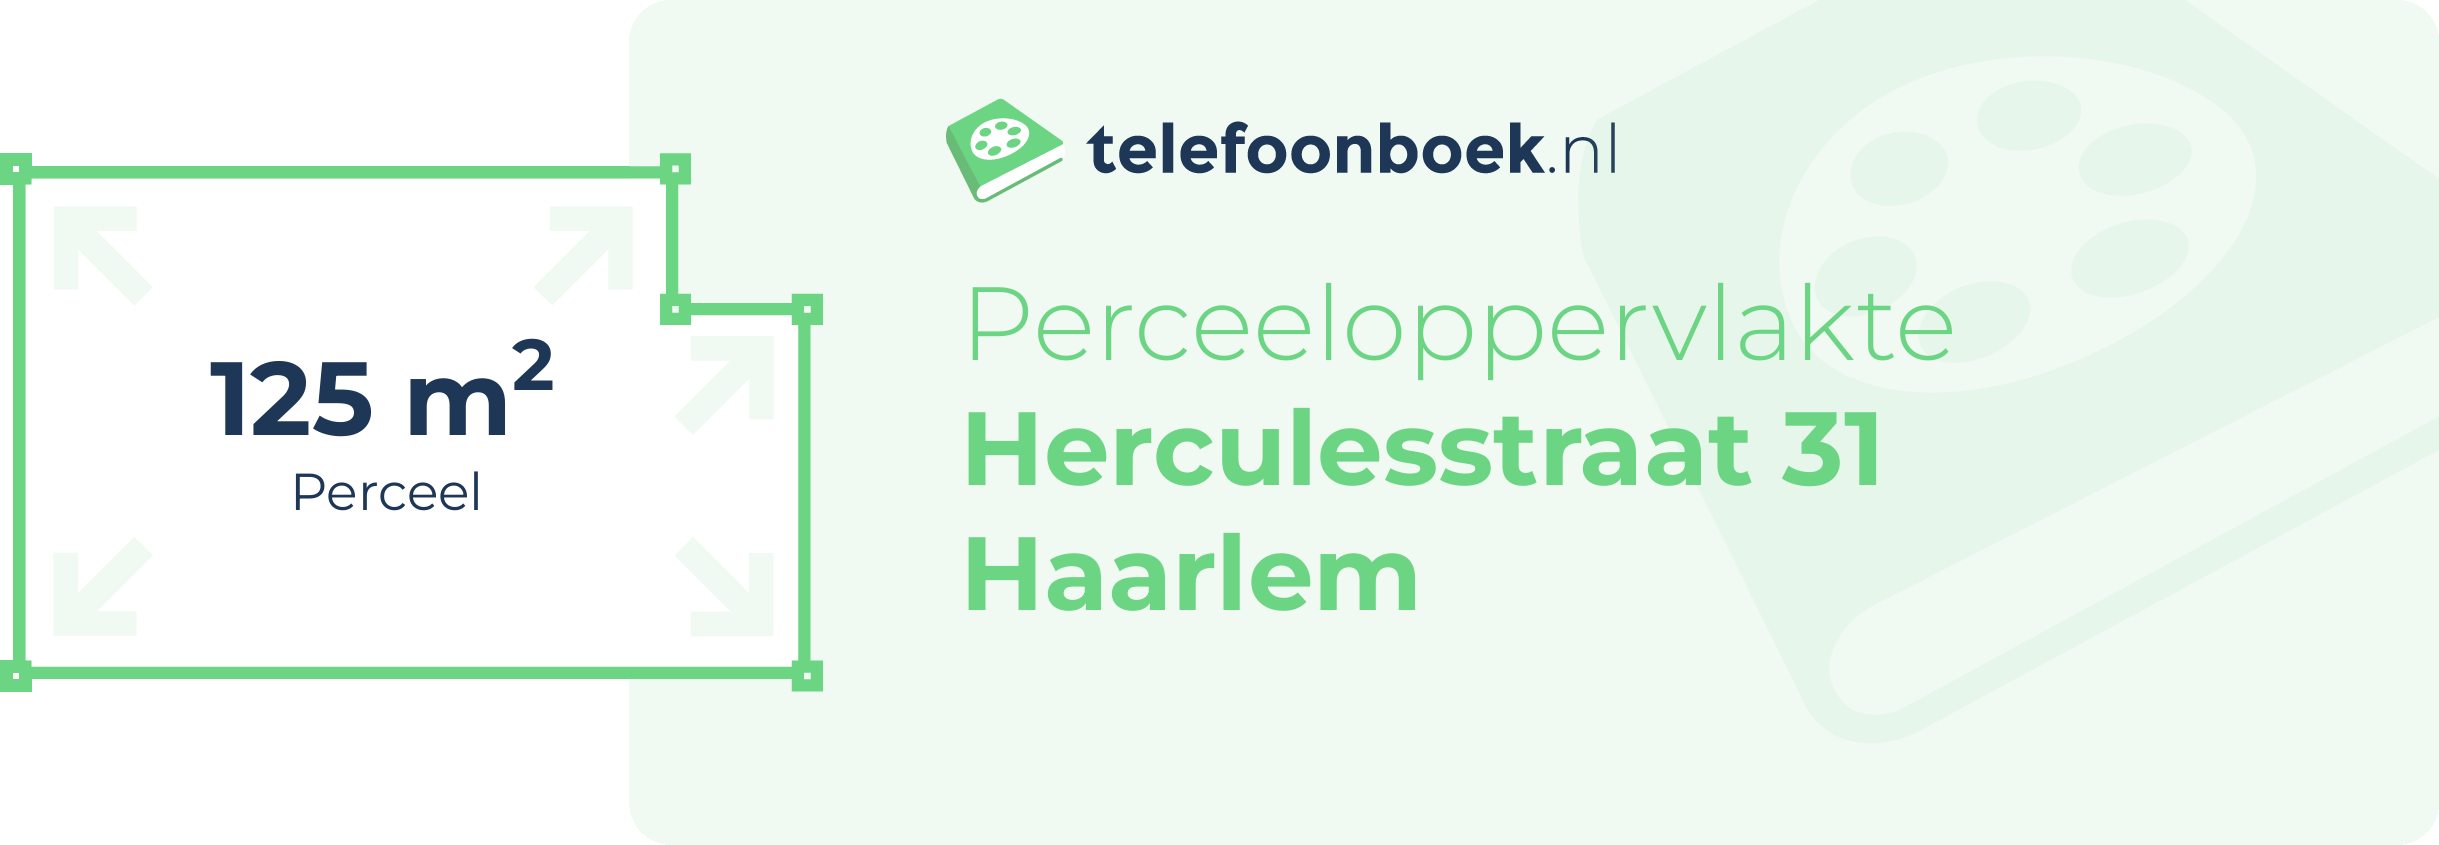 Perceeloppervlakte Herculesstraat 31 Haarlem